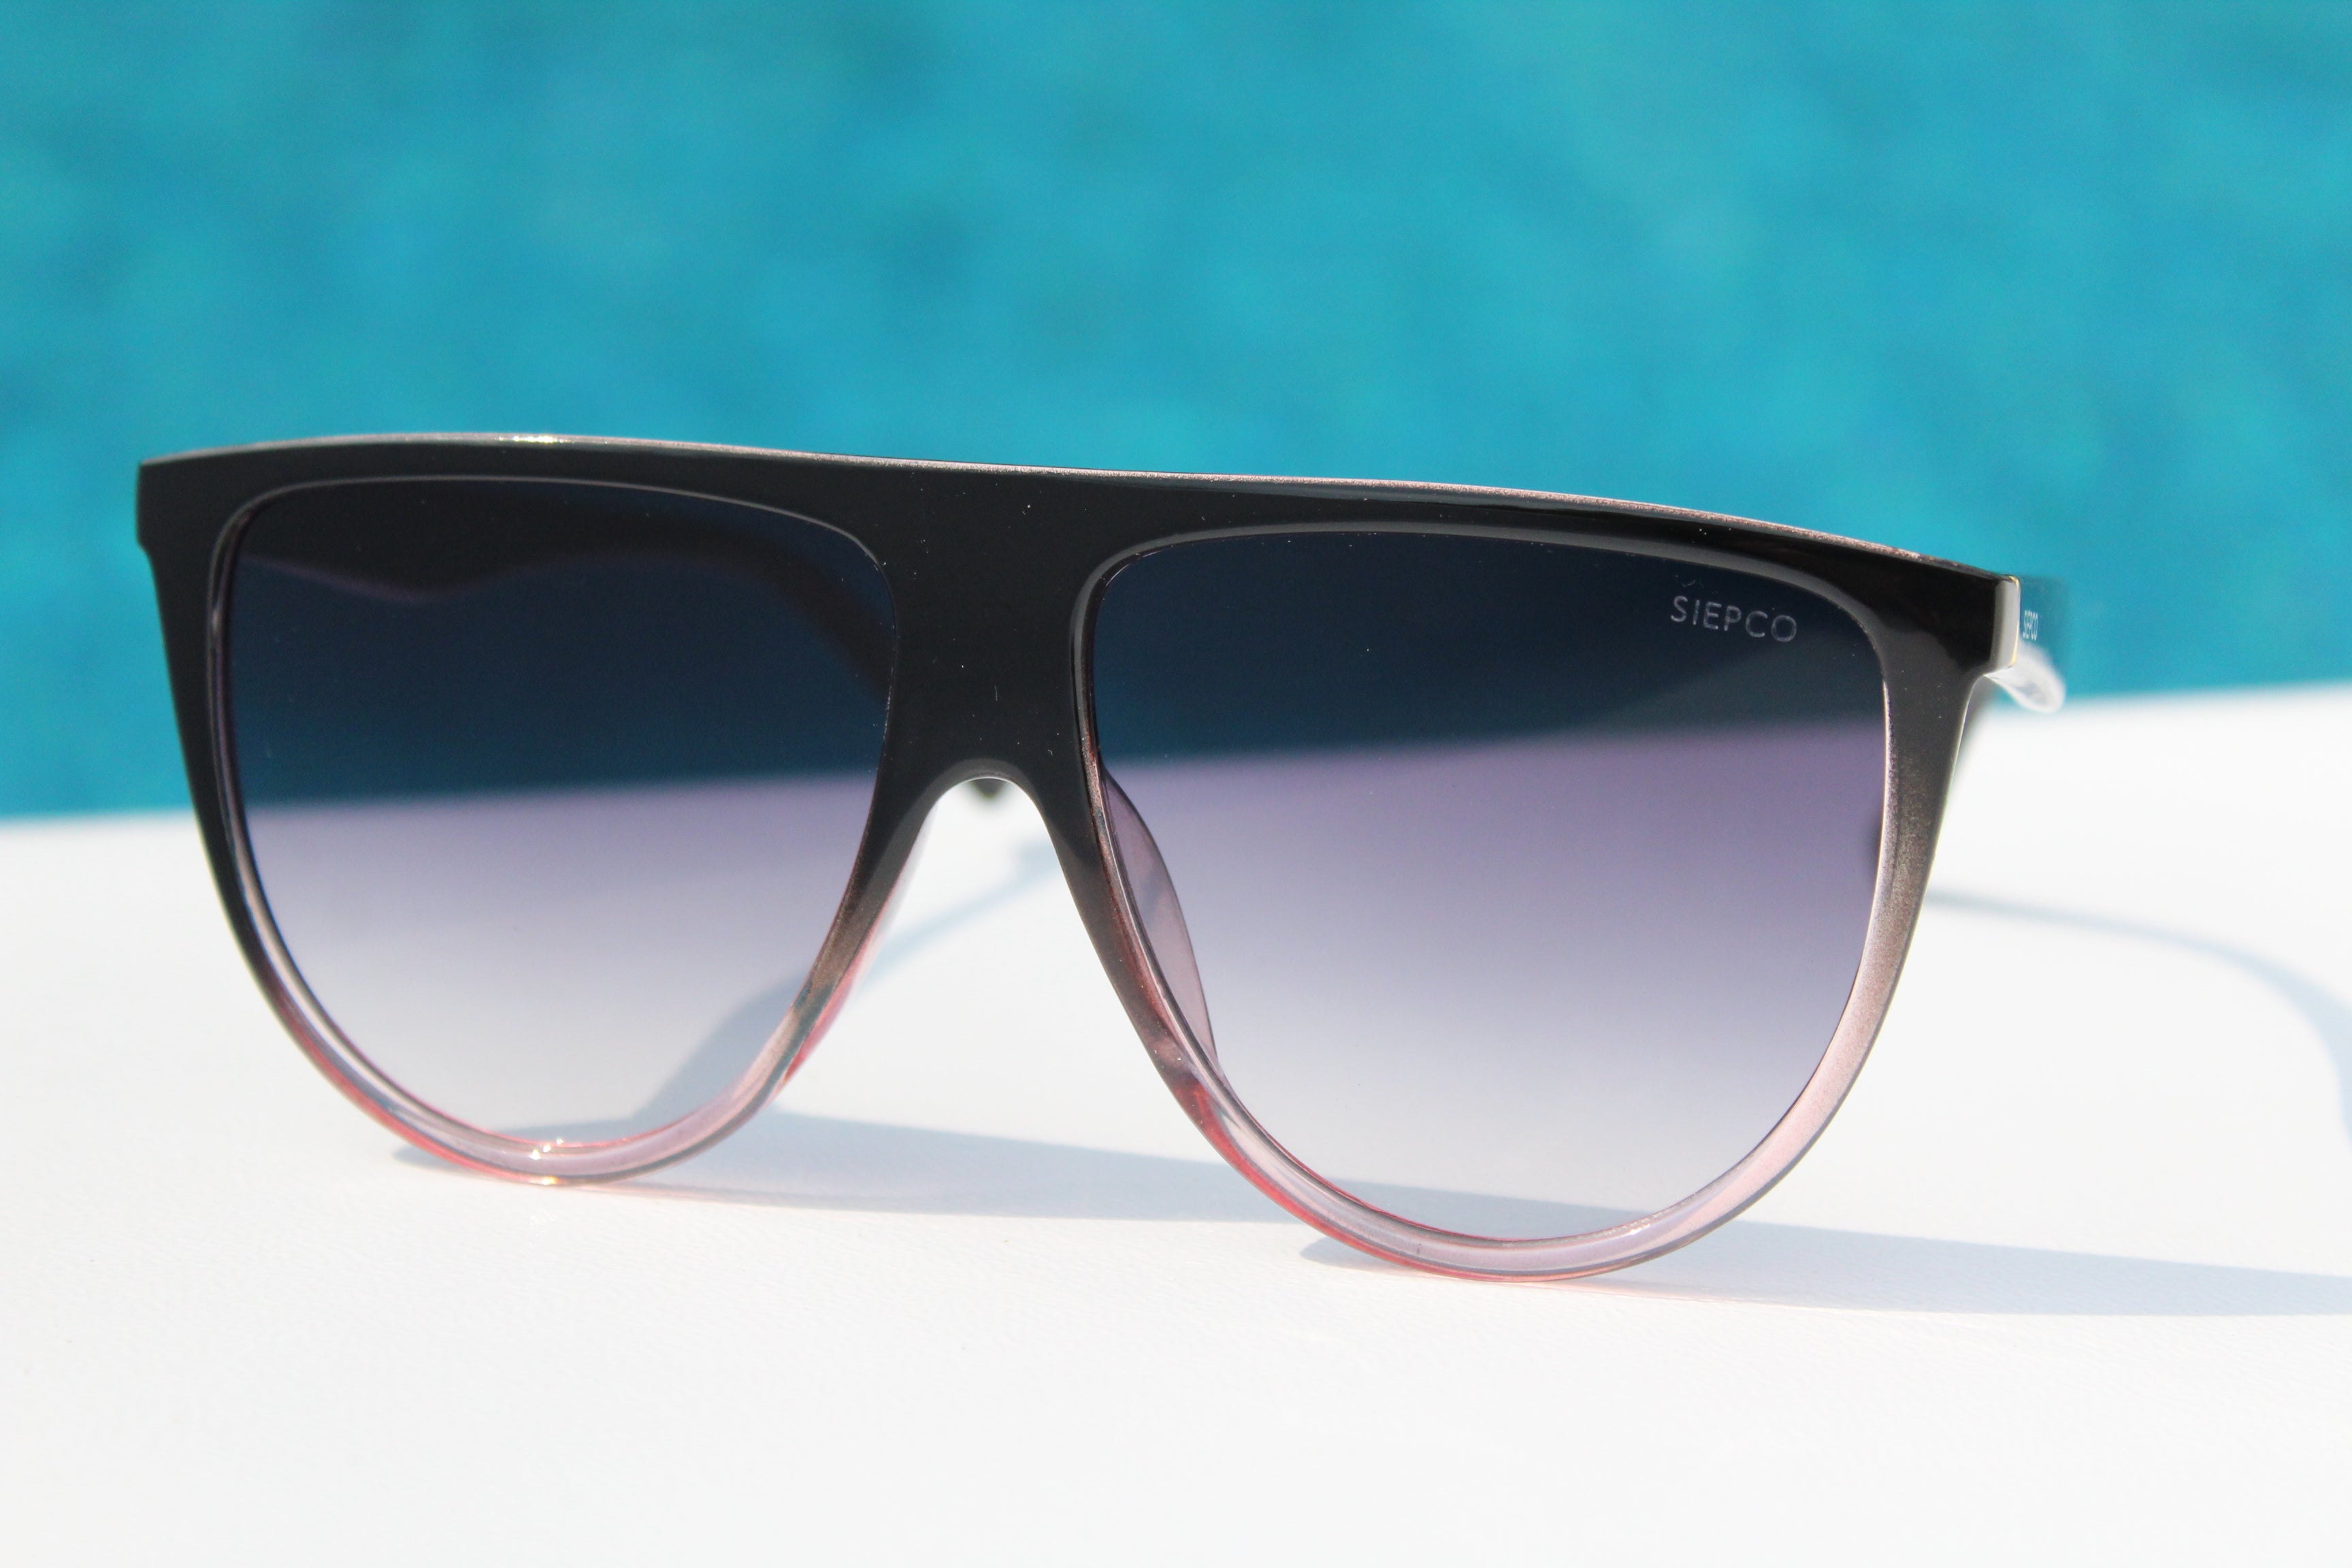 Malibu Style Sunglasses for Sale Canada - Women’s